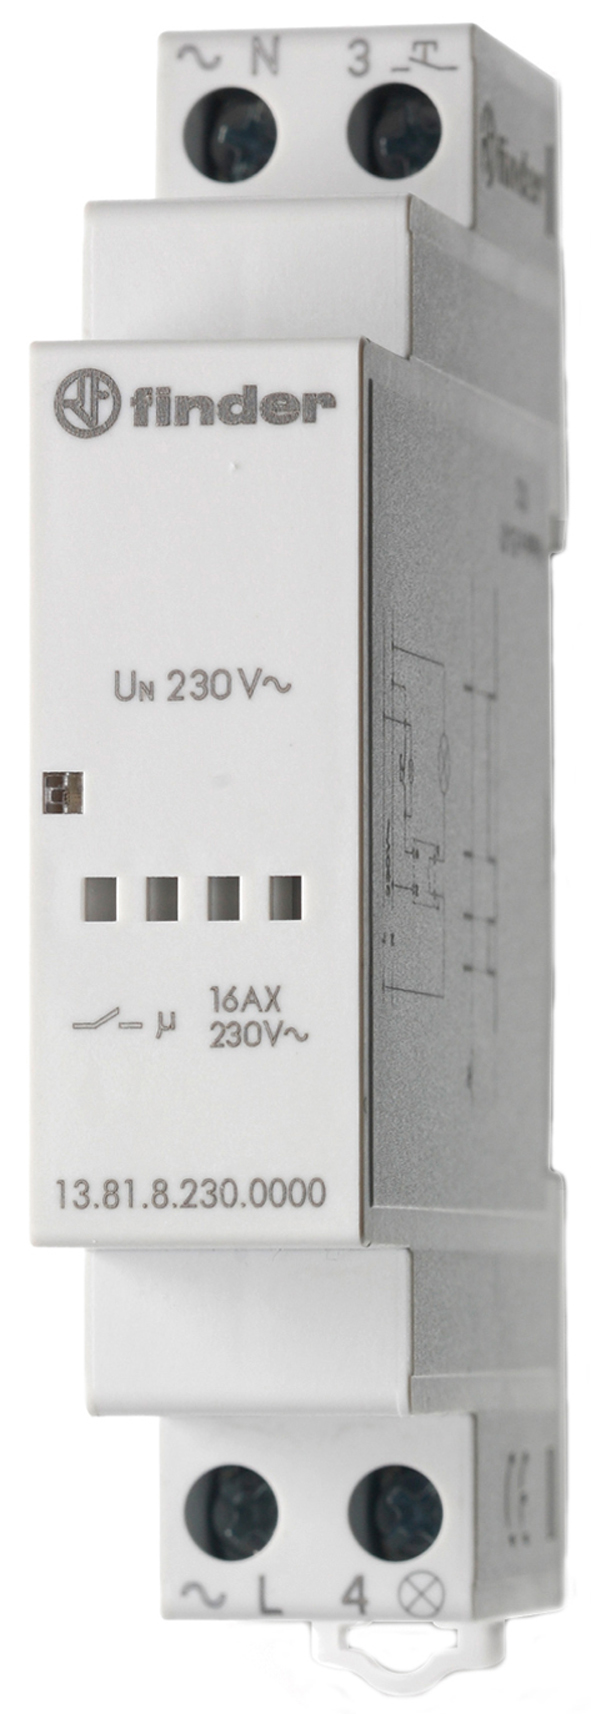 Impulsschakelaar voor in-line installatie, elektronisch, 1 maakcontact 16 A, voor 230 V AC